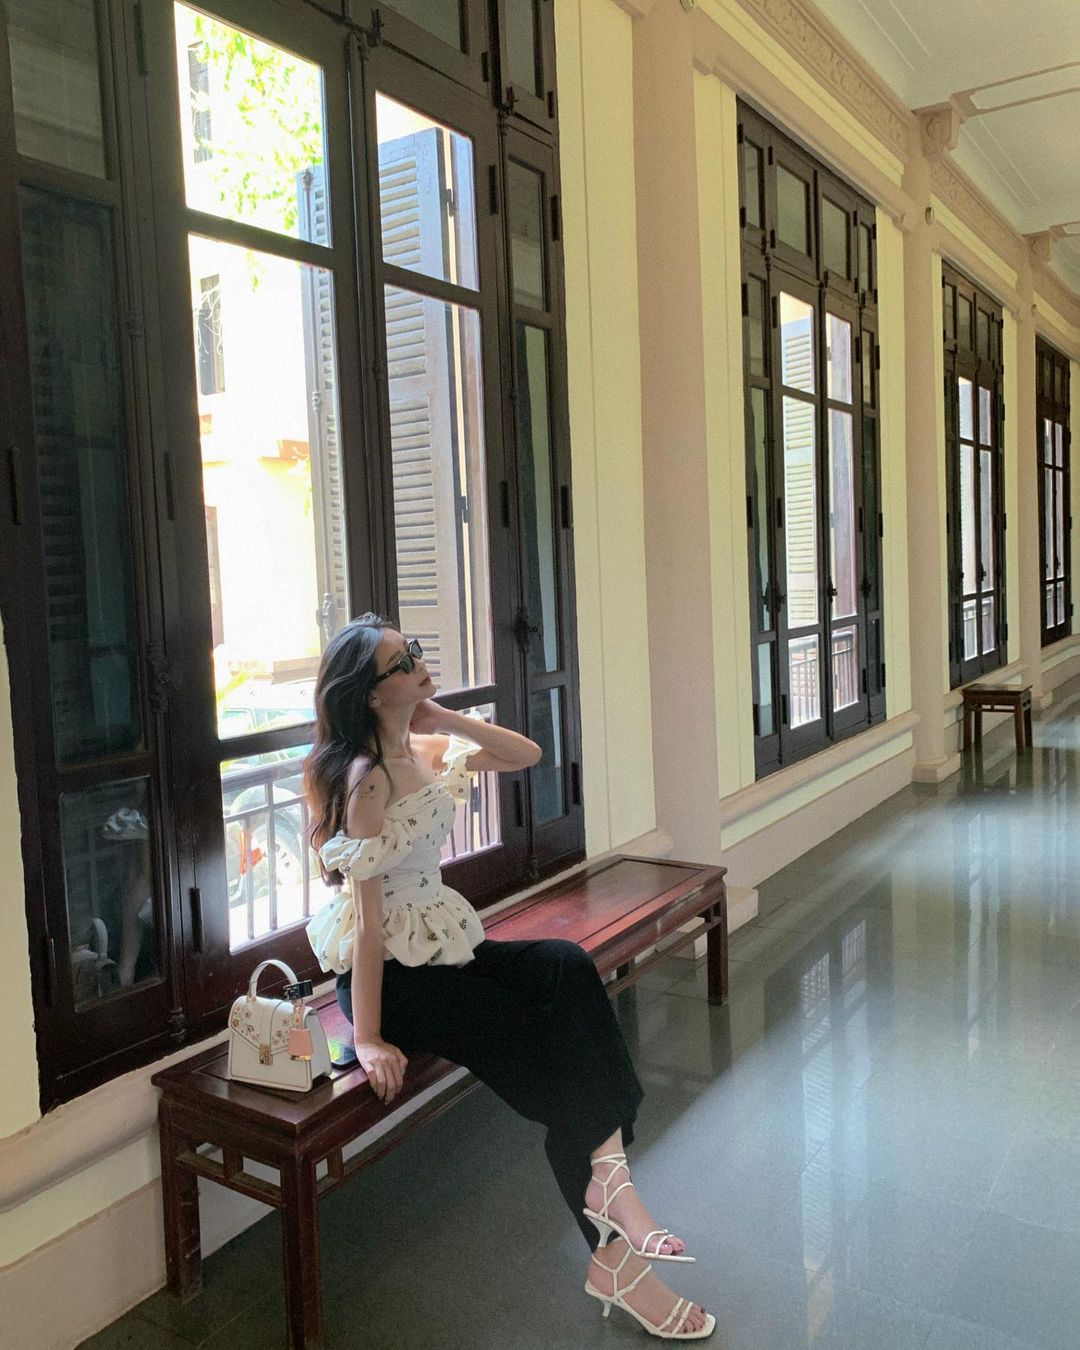 Cuối tuần đổi gió thăm thú các bảo tàng ở Hà Nội: Sao nỡ đi đâu khi Thủ đô còn vô vàn địa điểm đẹp như này - ảnh 9